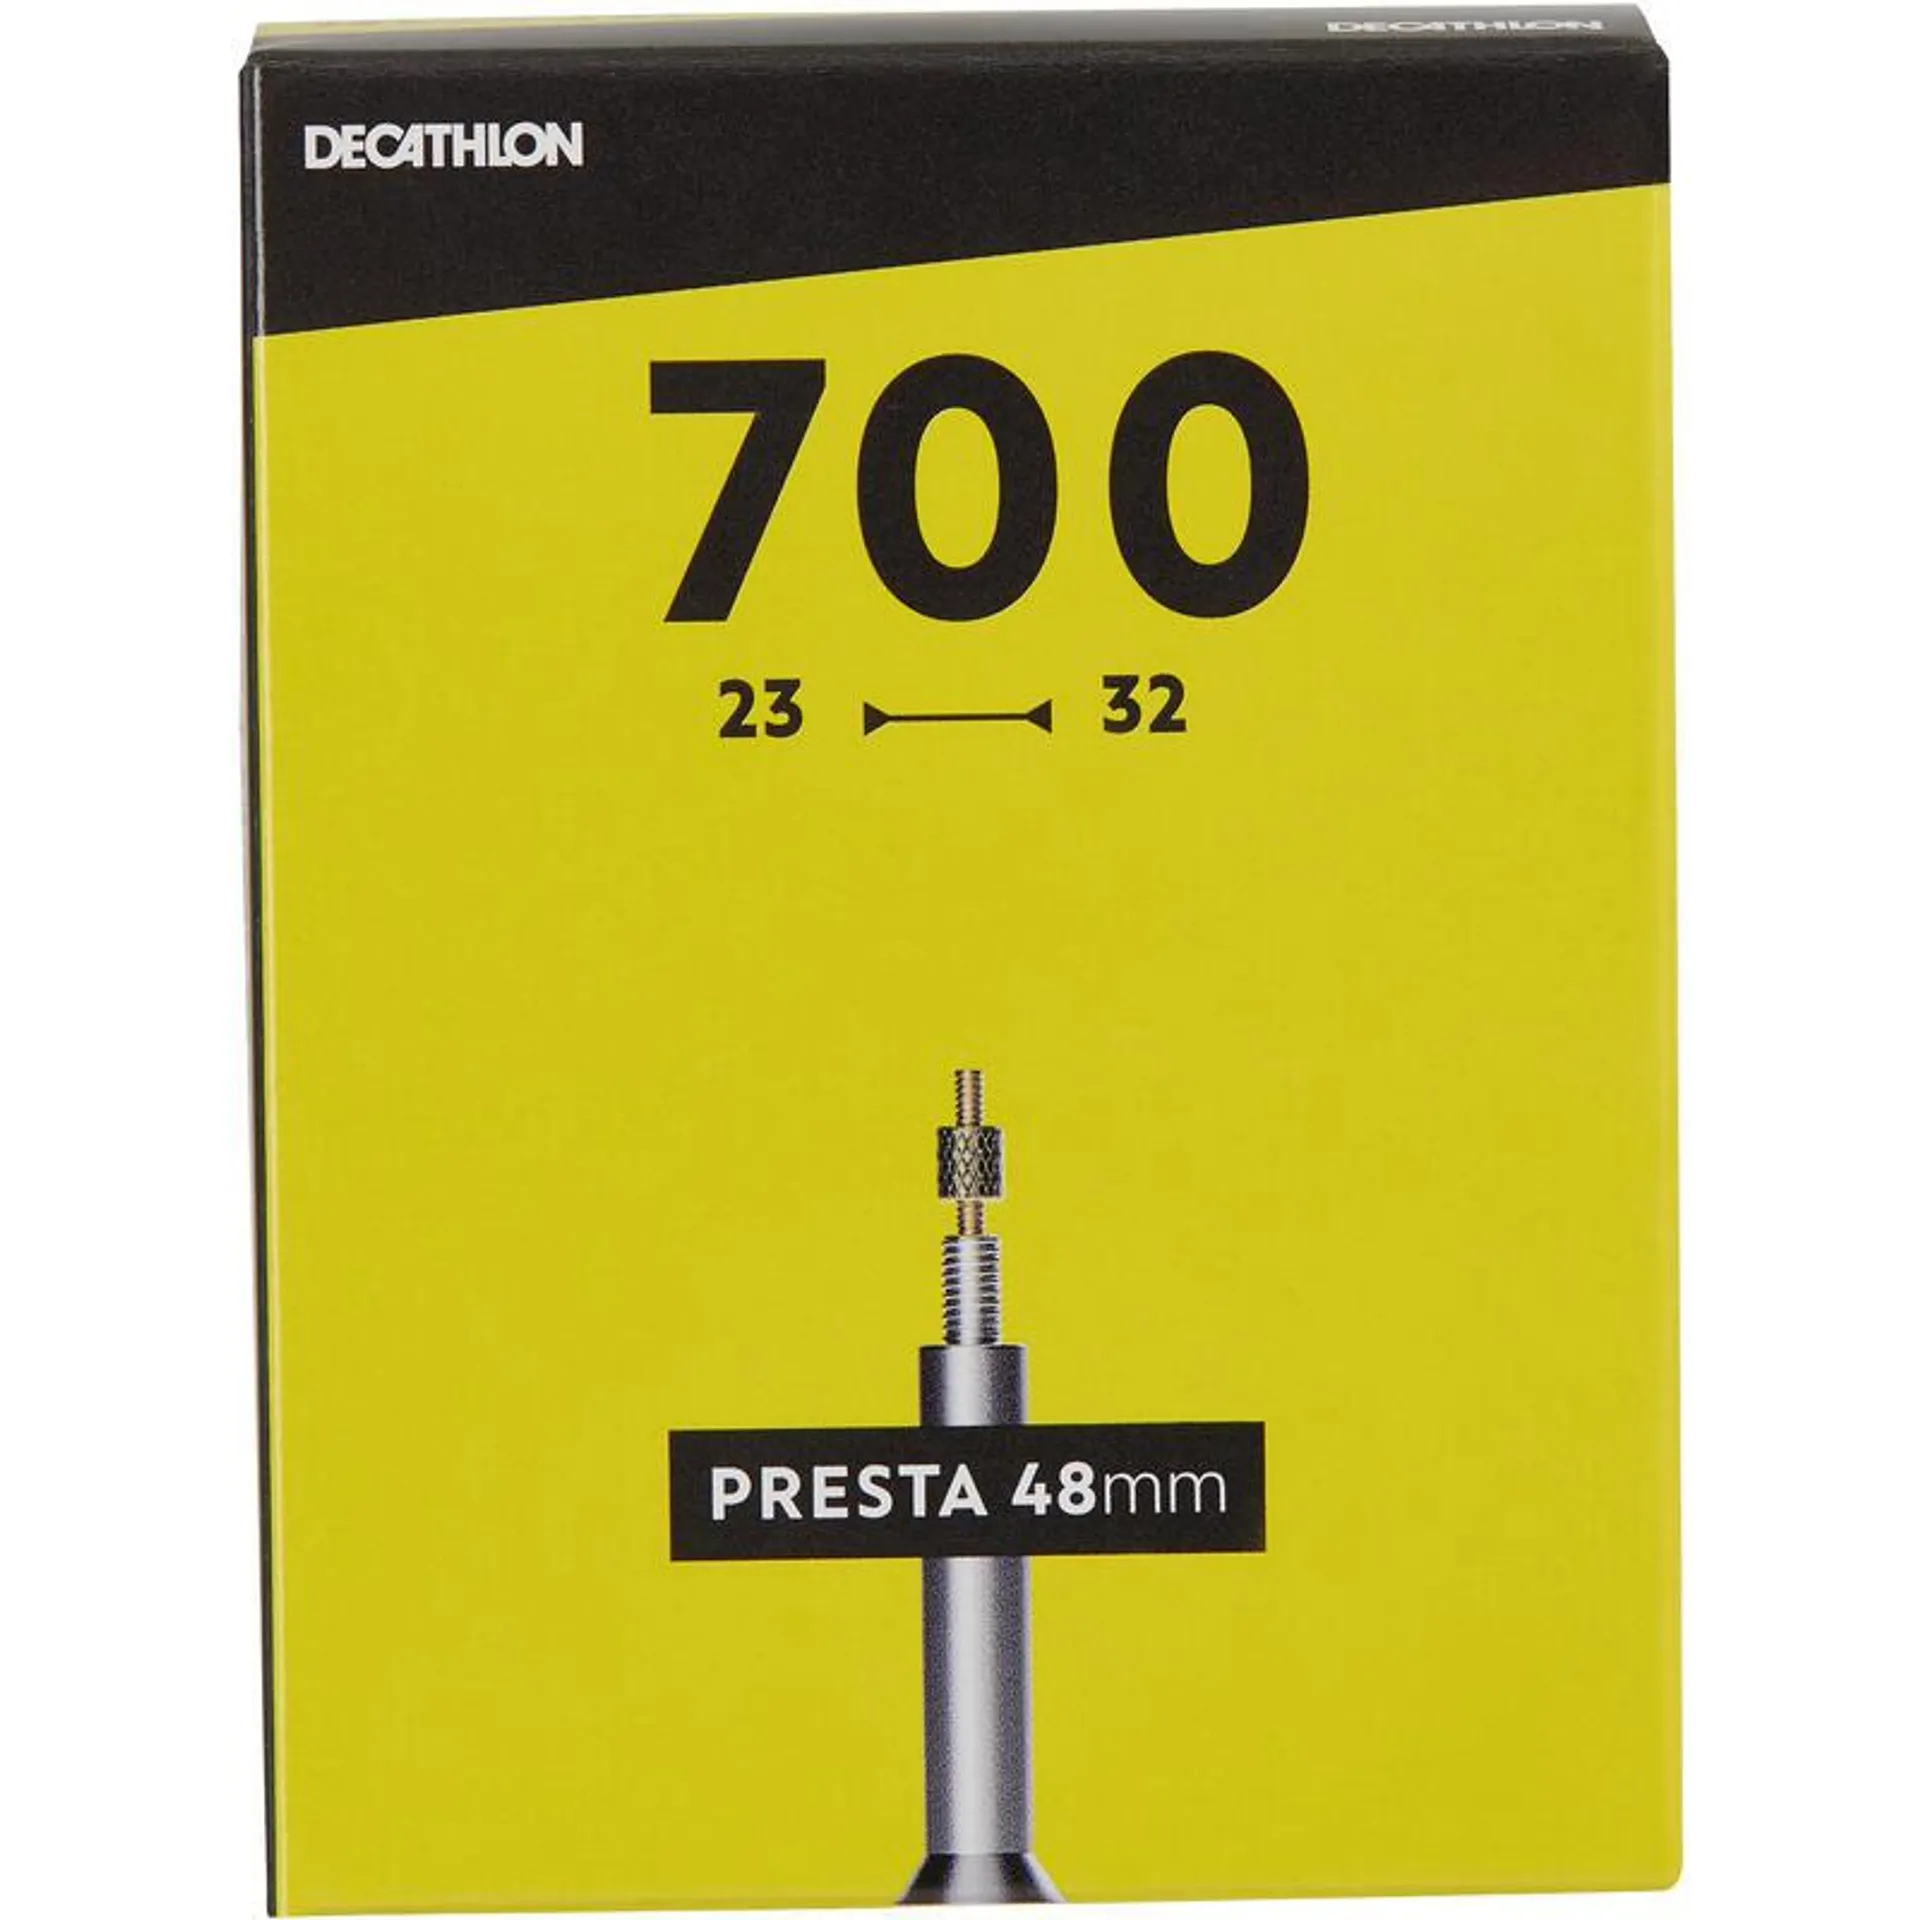 Duše 700x23/32 s 48mm ventilkem Presta